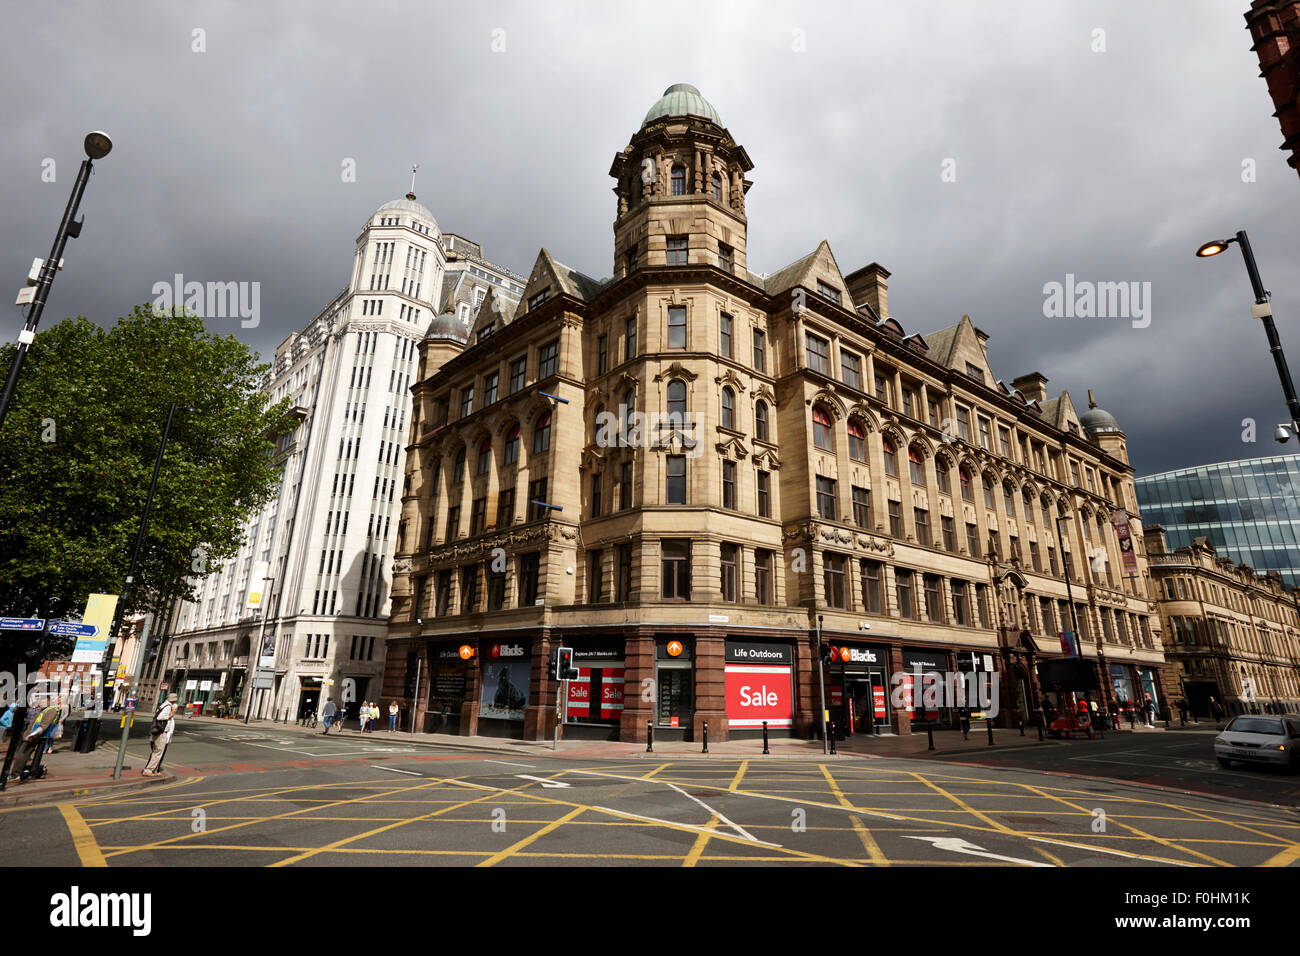 Edificios histórico sobre 196 deansgate calle principal del centro de la ciudad de Manchester Inglaterra Foto de stock